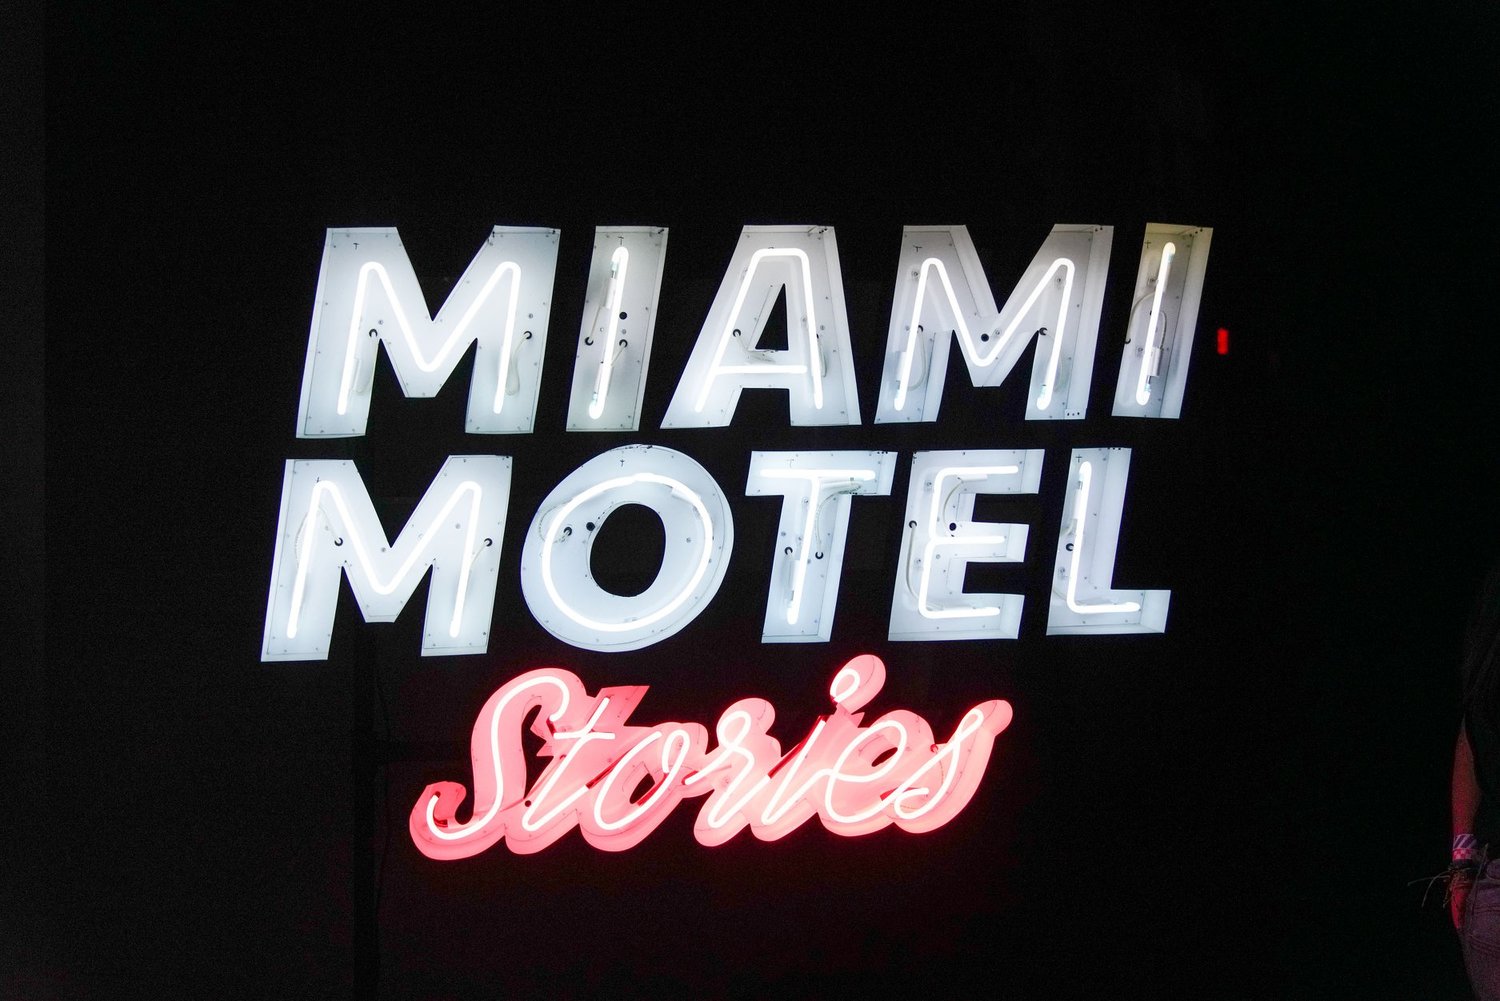 miami-motel-stories-neon-sign-img